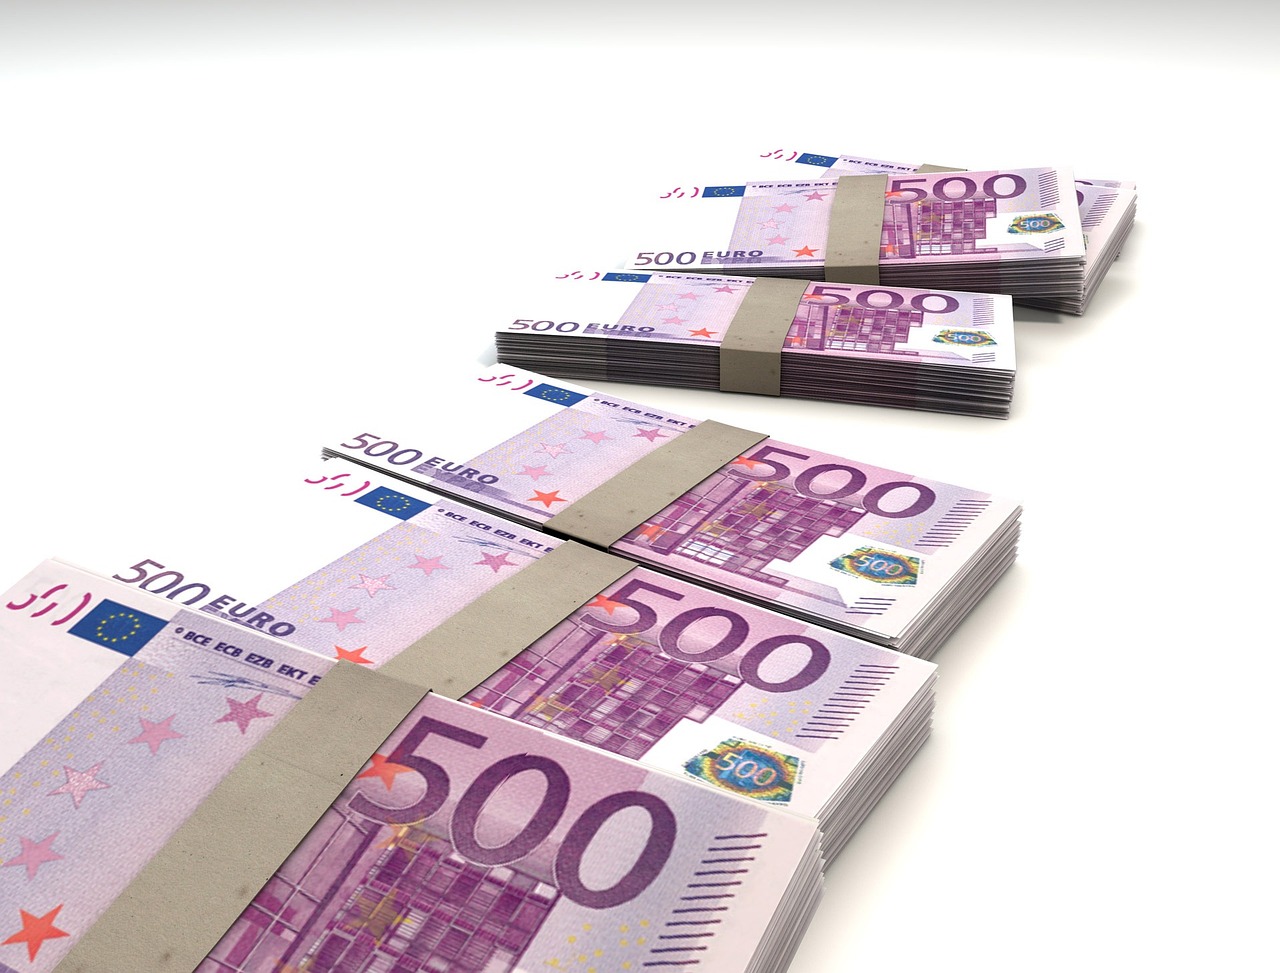 L'État a dépensé 100 milliards d'euros pour soutenir le pouvoir d'achat des Français